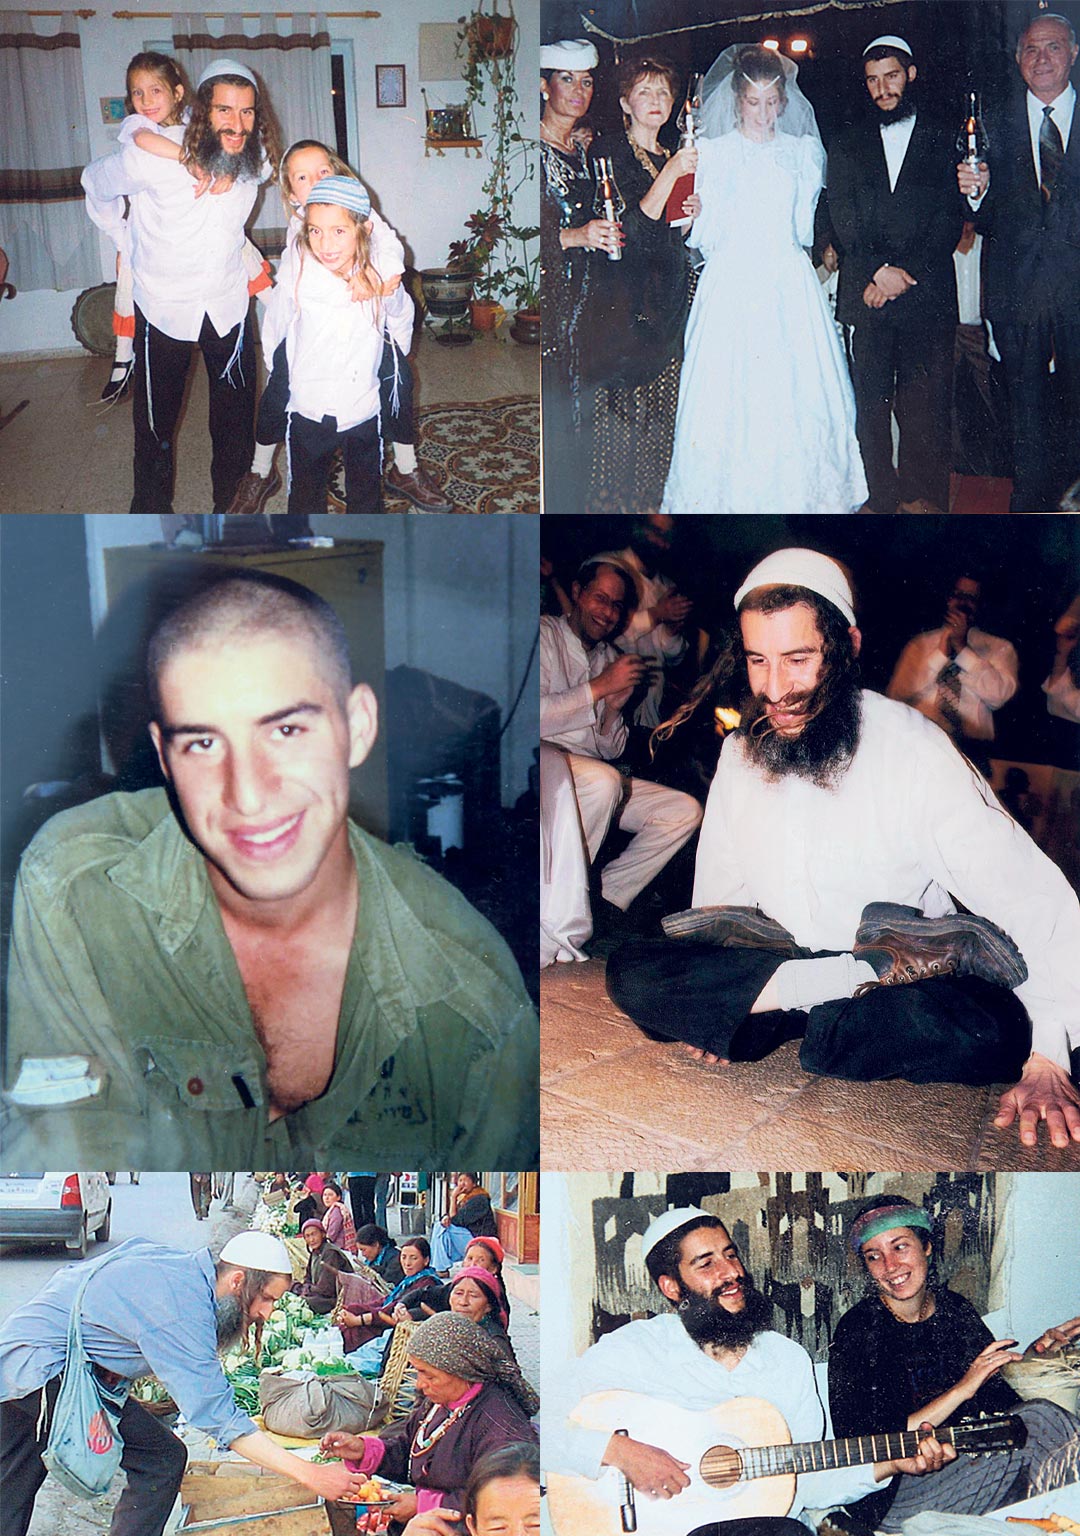 ארז לבנון כחילוני וכחסיד ברסלב: כחייל, בחתונה עם אשתו דפנה, עם ילדיו, בצפון הודו ועם הגיטרה | צילומים: באדיבות המשפחה